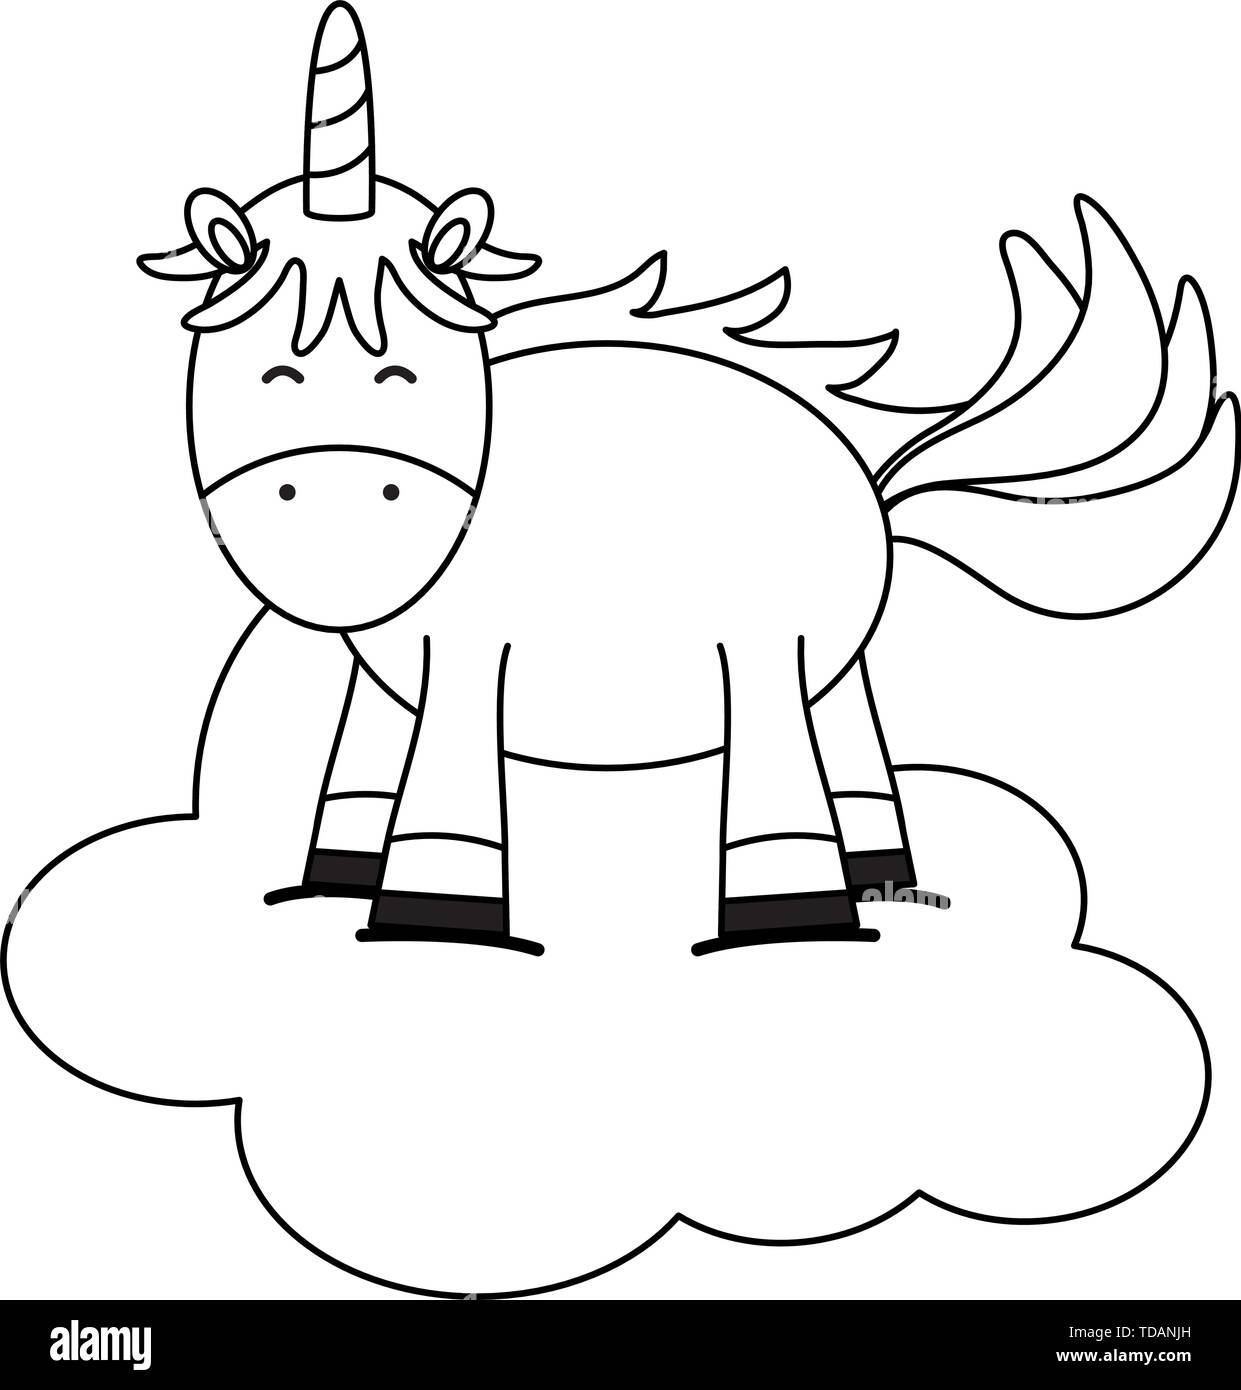 Cute adorable nuage flottant dans l'unicorn fairy design illustration vecteur de caractères Illustration de Vecteur